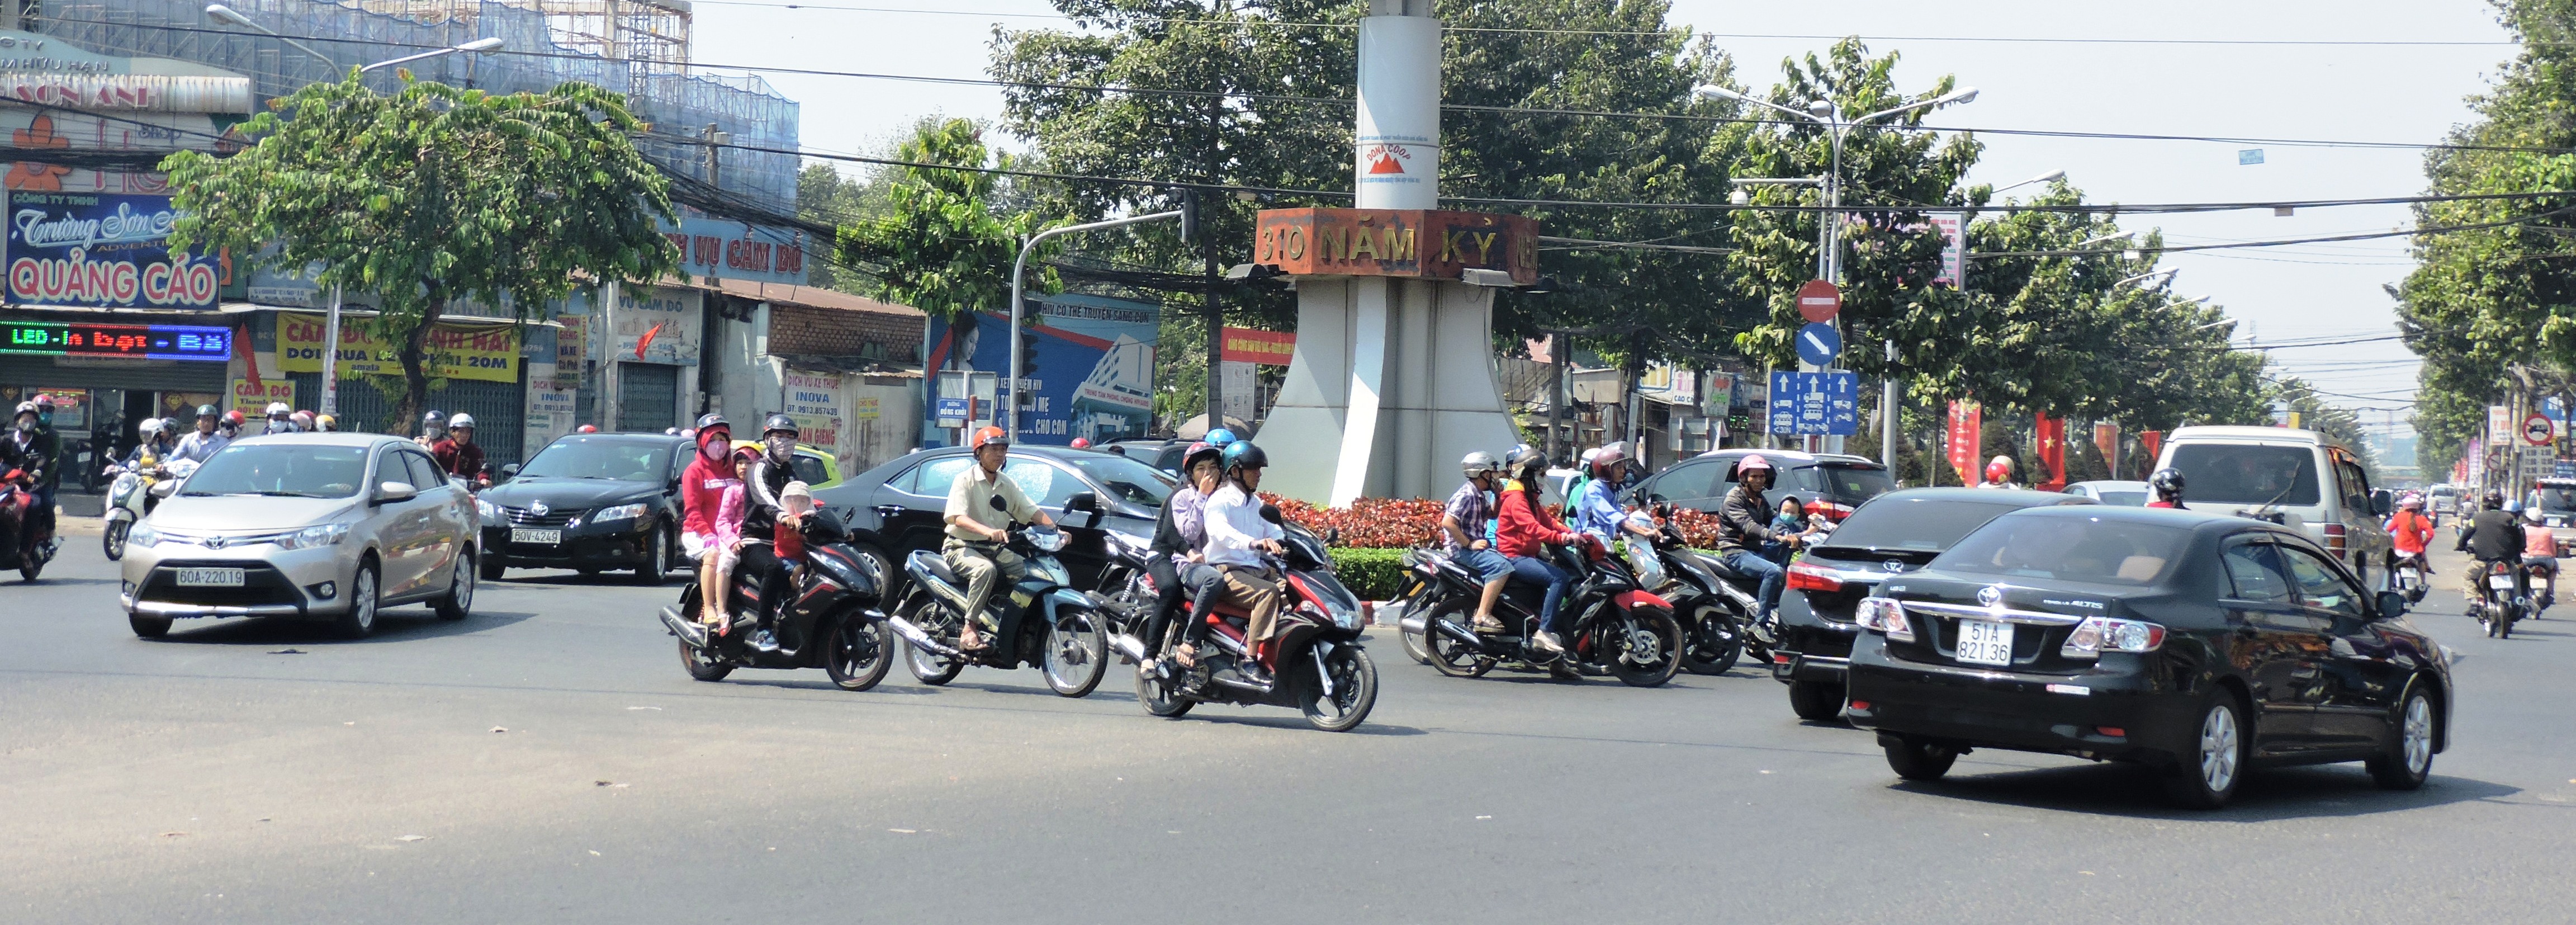 Ngã tư Tân Phong, các phương tiện giao thông có đông nhưng không gây ùn tắc.